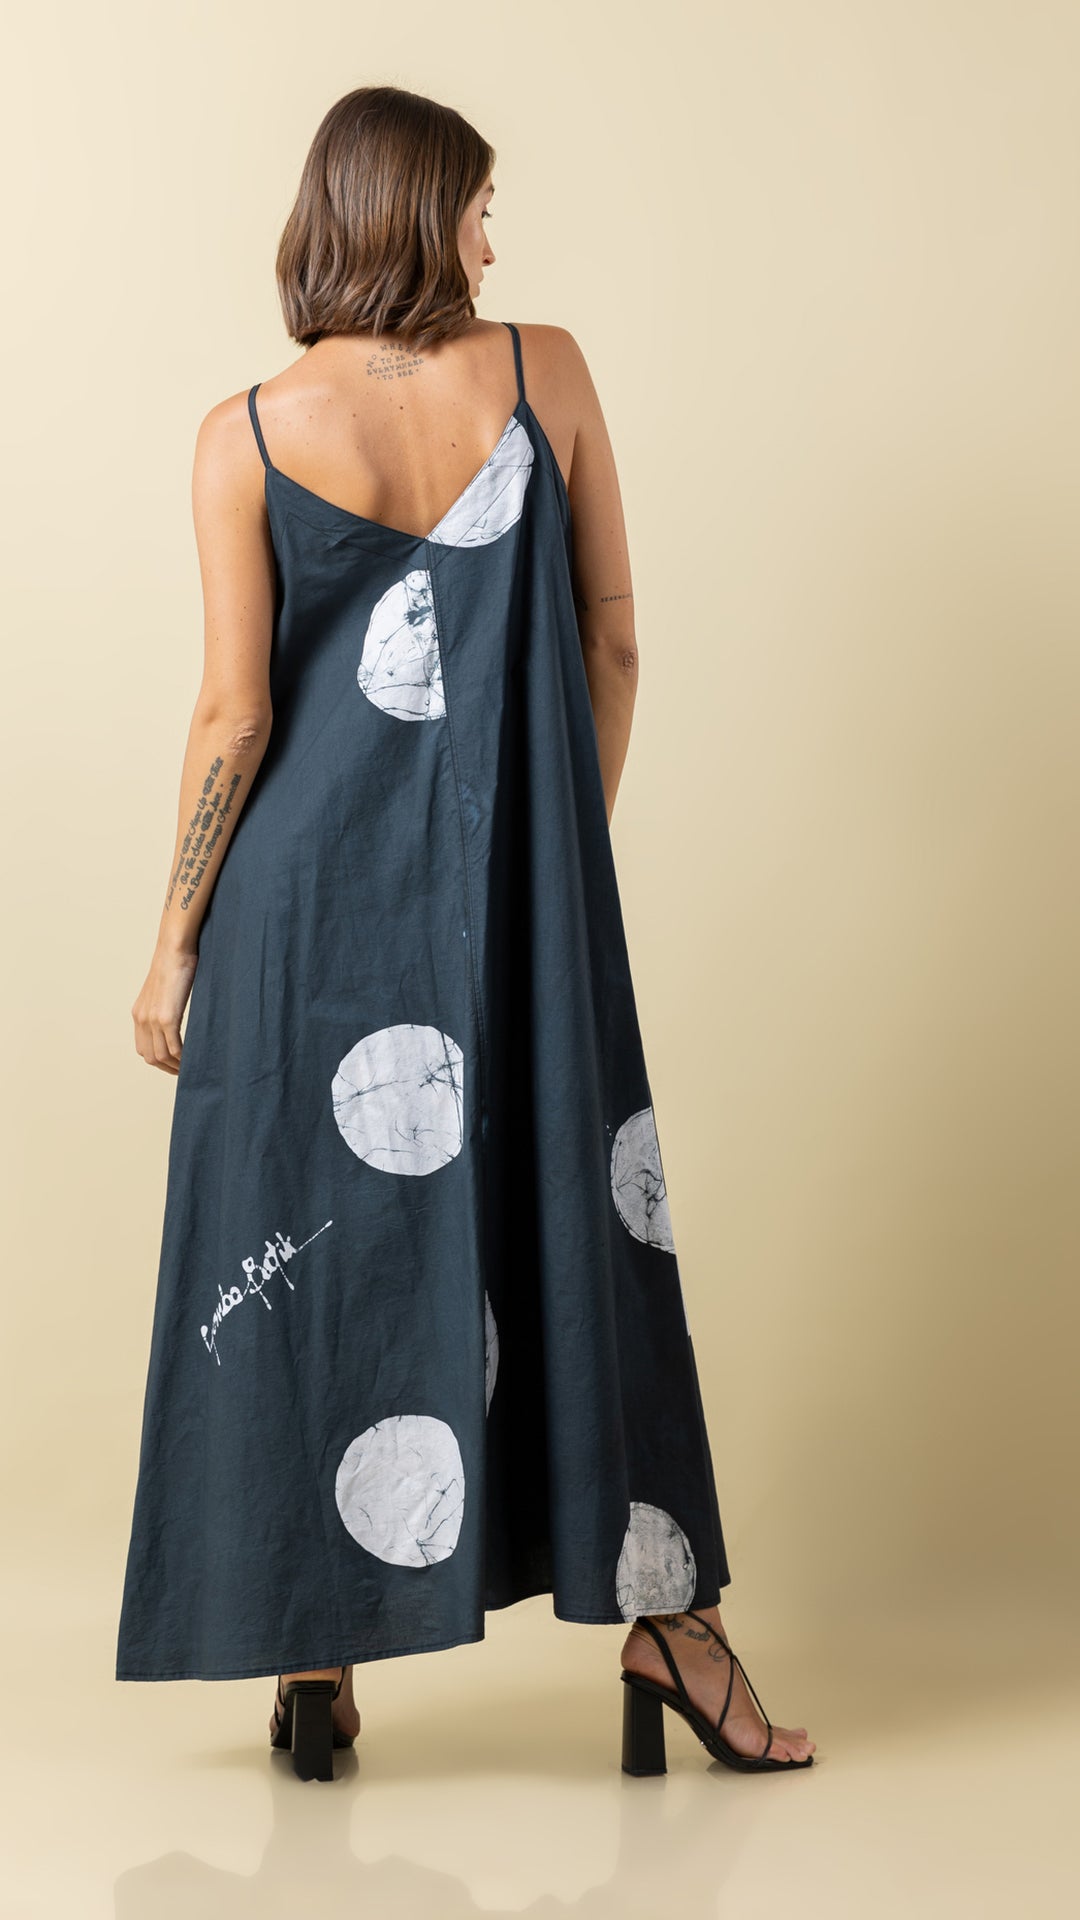 Black Polka Dot Perfection: Versatile Long Strap Dress